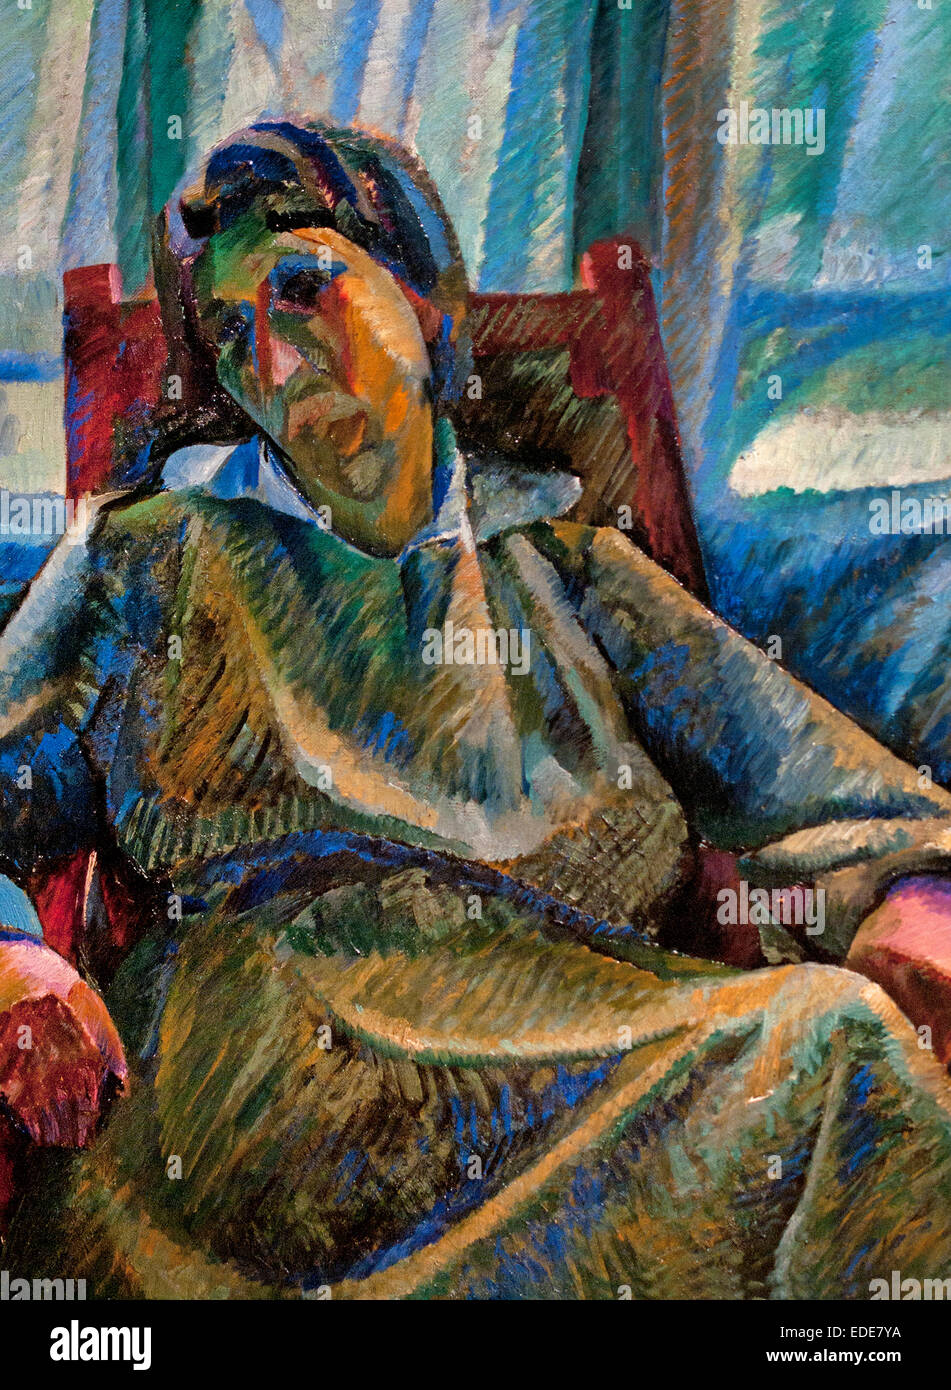 Sintesi plastica di figura seduta (Silvia) - récapitulatif figure en plastique assis vers 1915 Umberto Boccioni, Italie Italien Banque D'Images